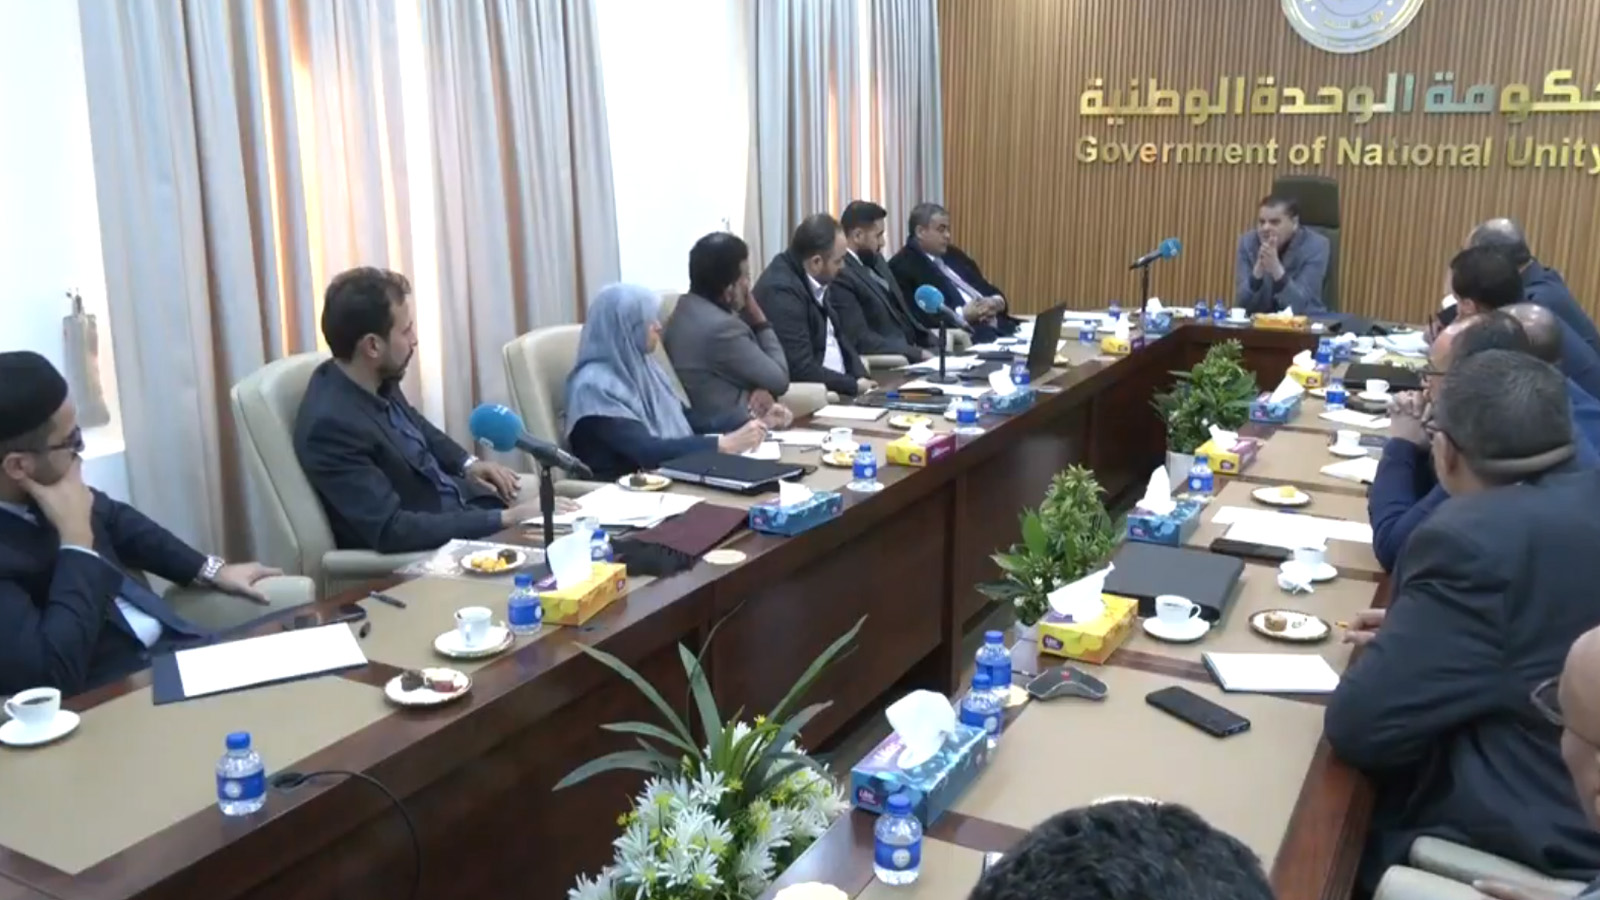 لقطة من اجتماع حكومة الوحدة الوطنية الليبية برئاسة عبدالحميد الدبيبة